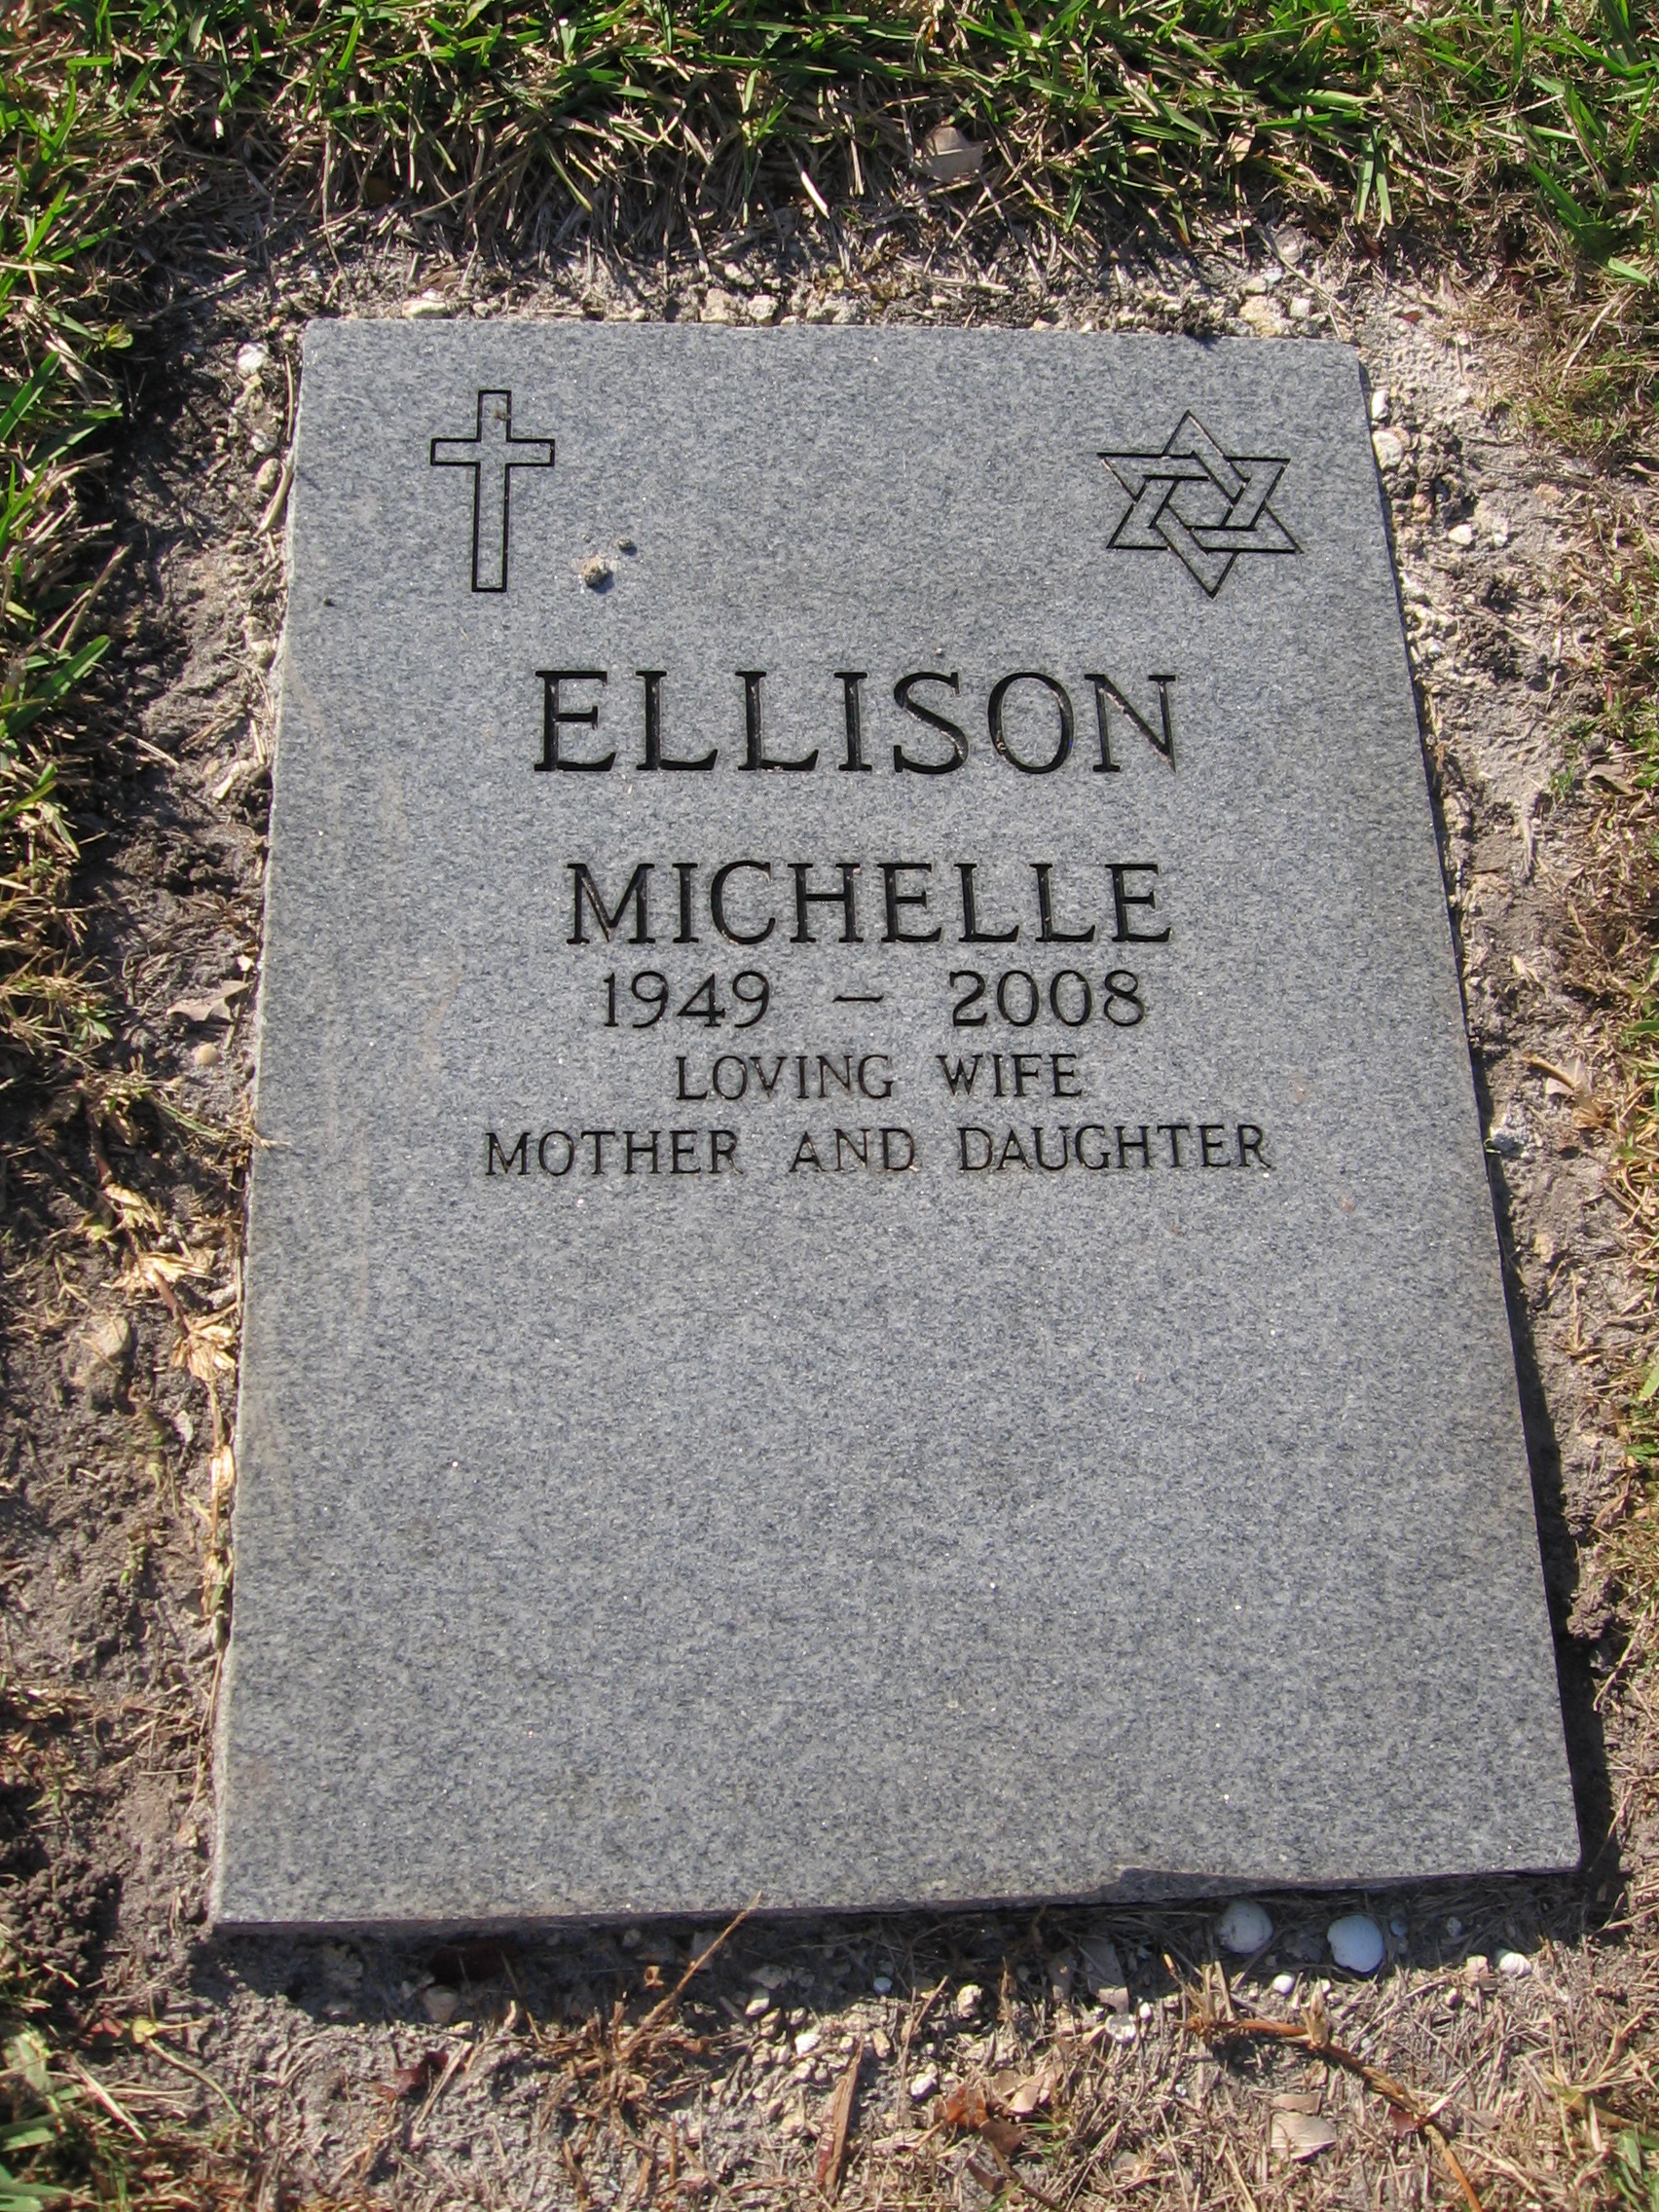 Michelle Ellison